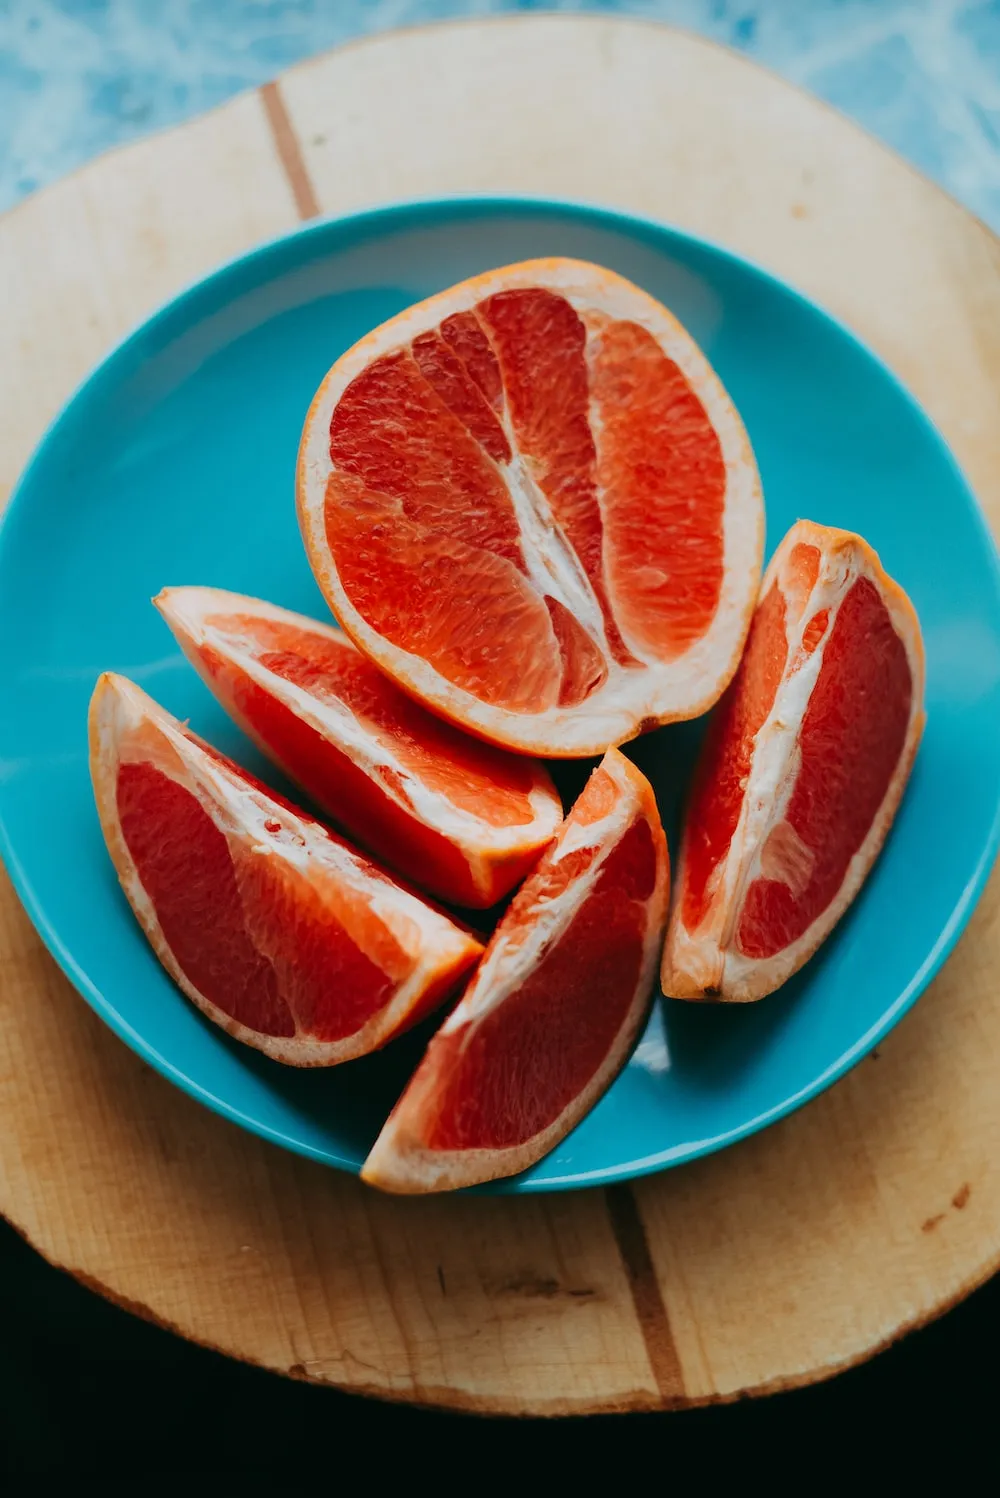 Buy oro blanco grapefruit vs pomelo types + price